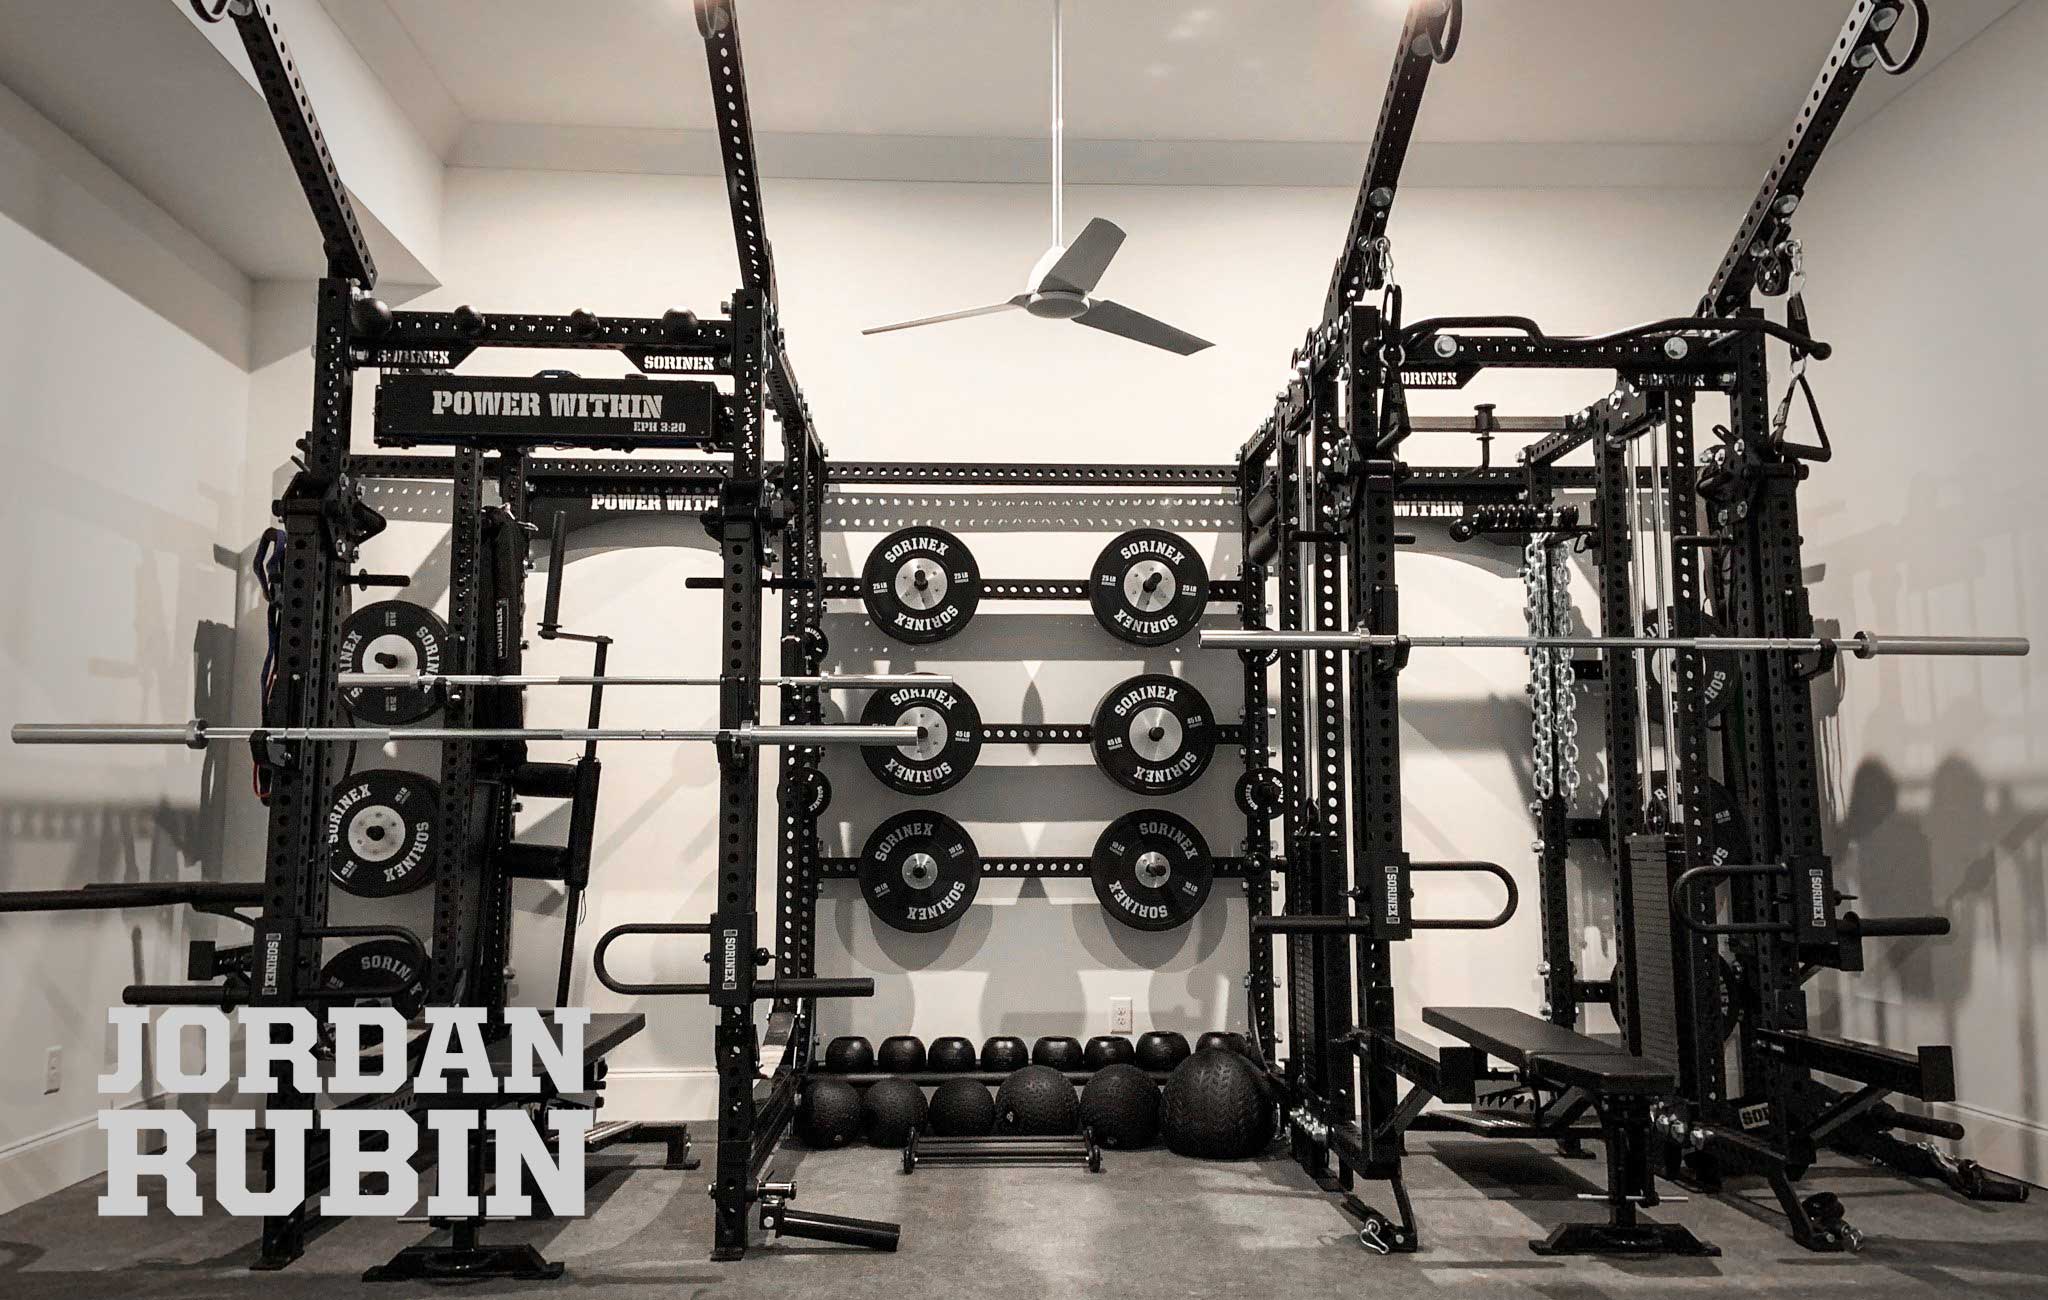 Jordan Rubin Sorinex Home Gym